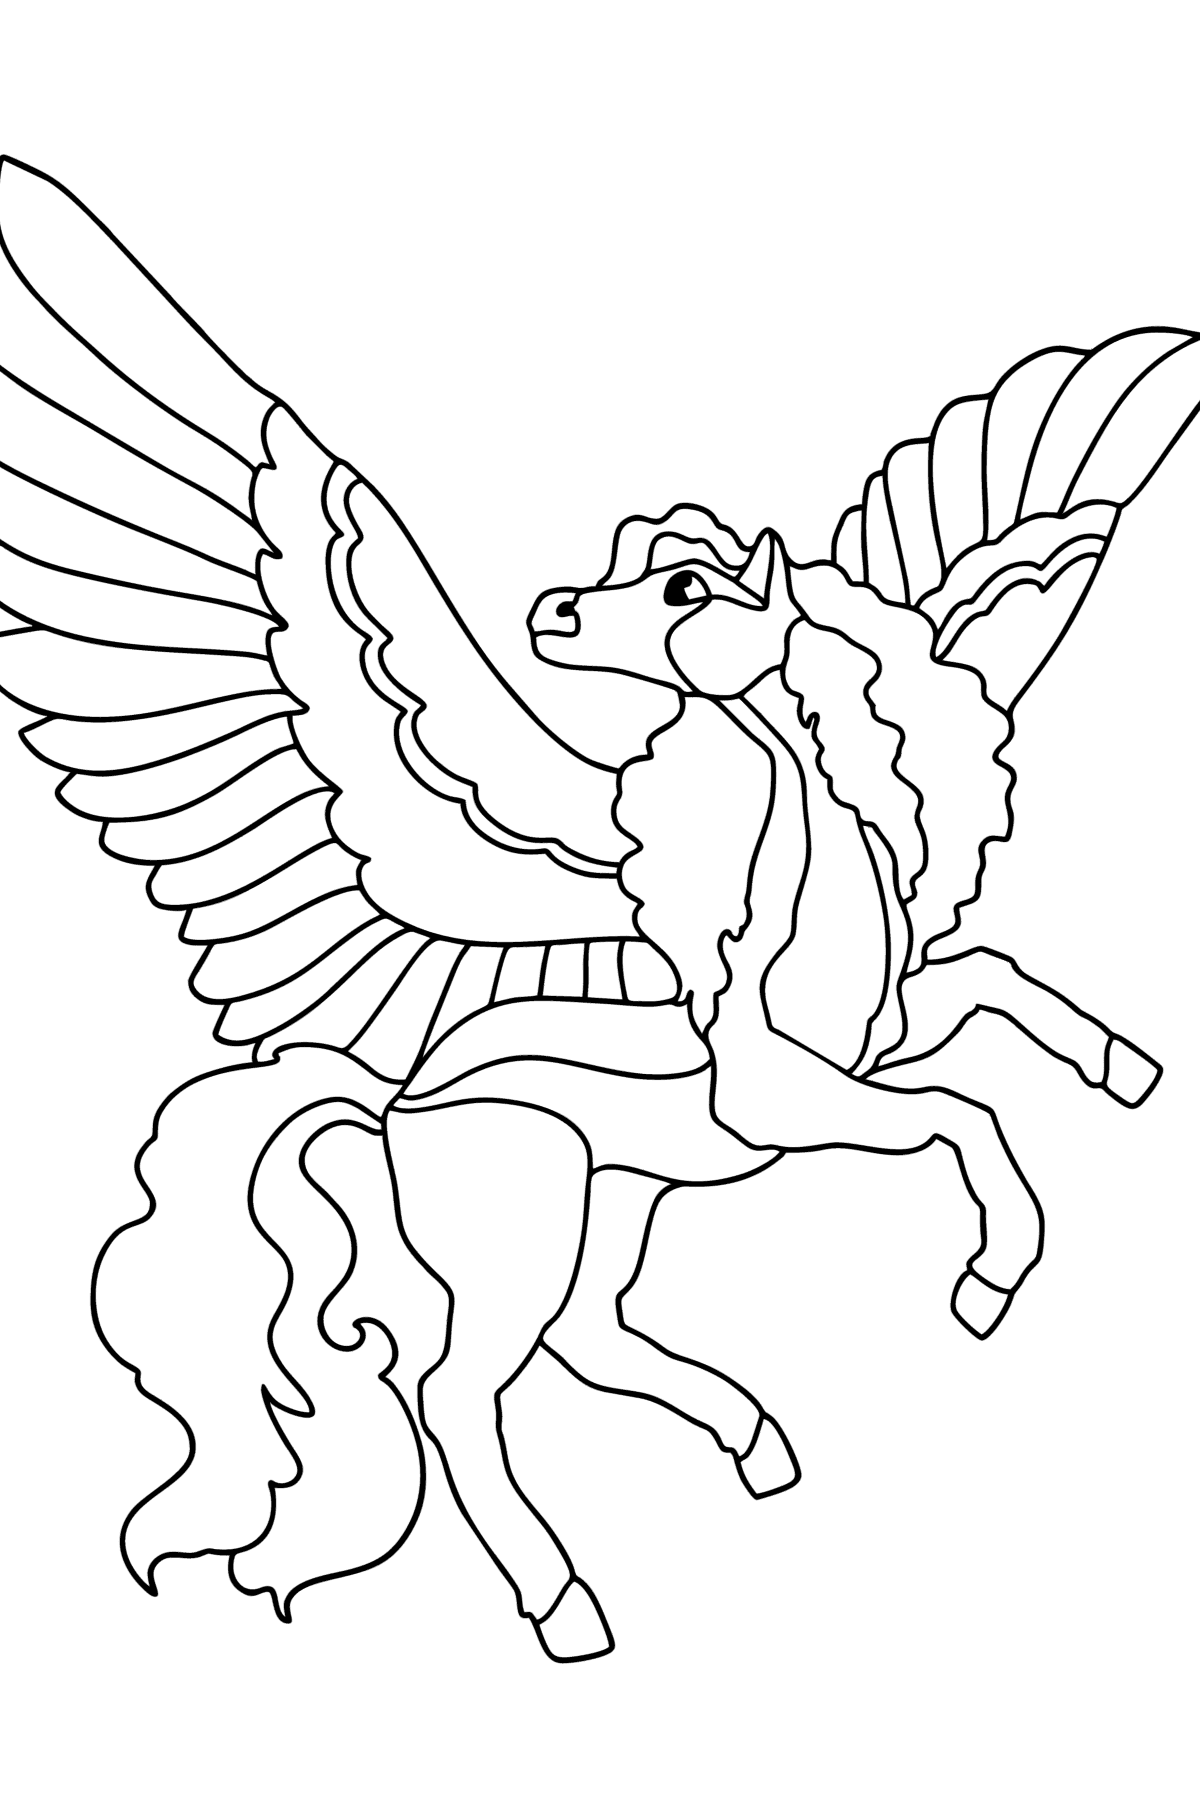 Målarbild Pegasus med rosa vingar - Målarbilder För barn